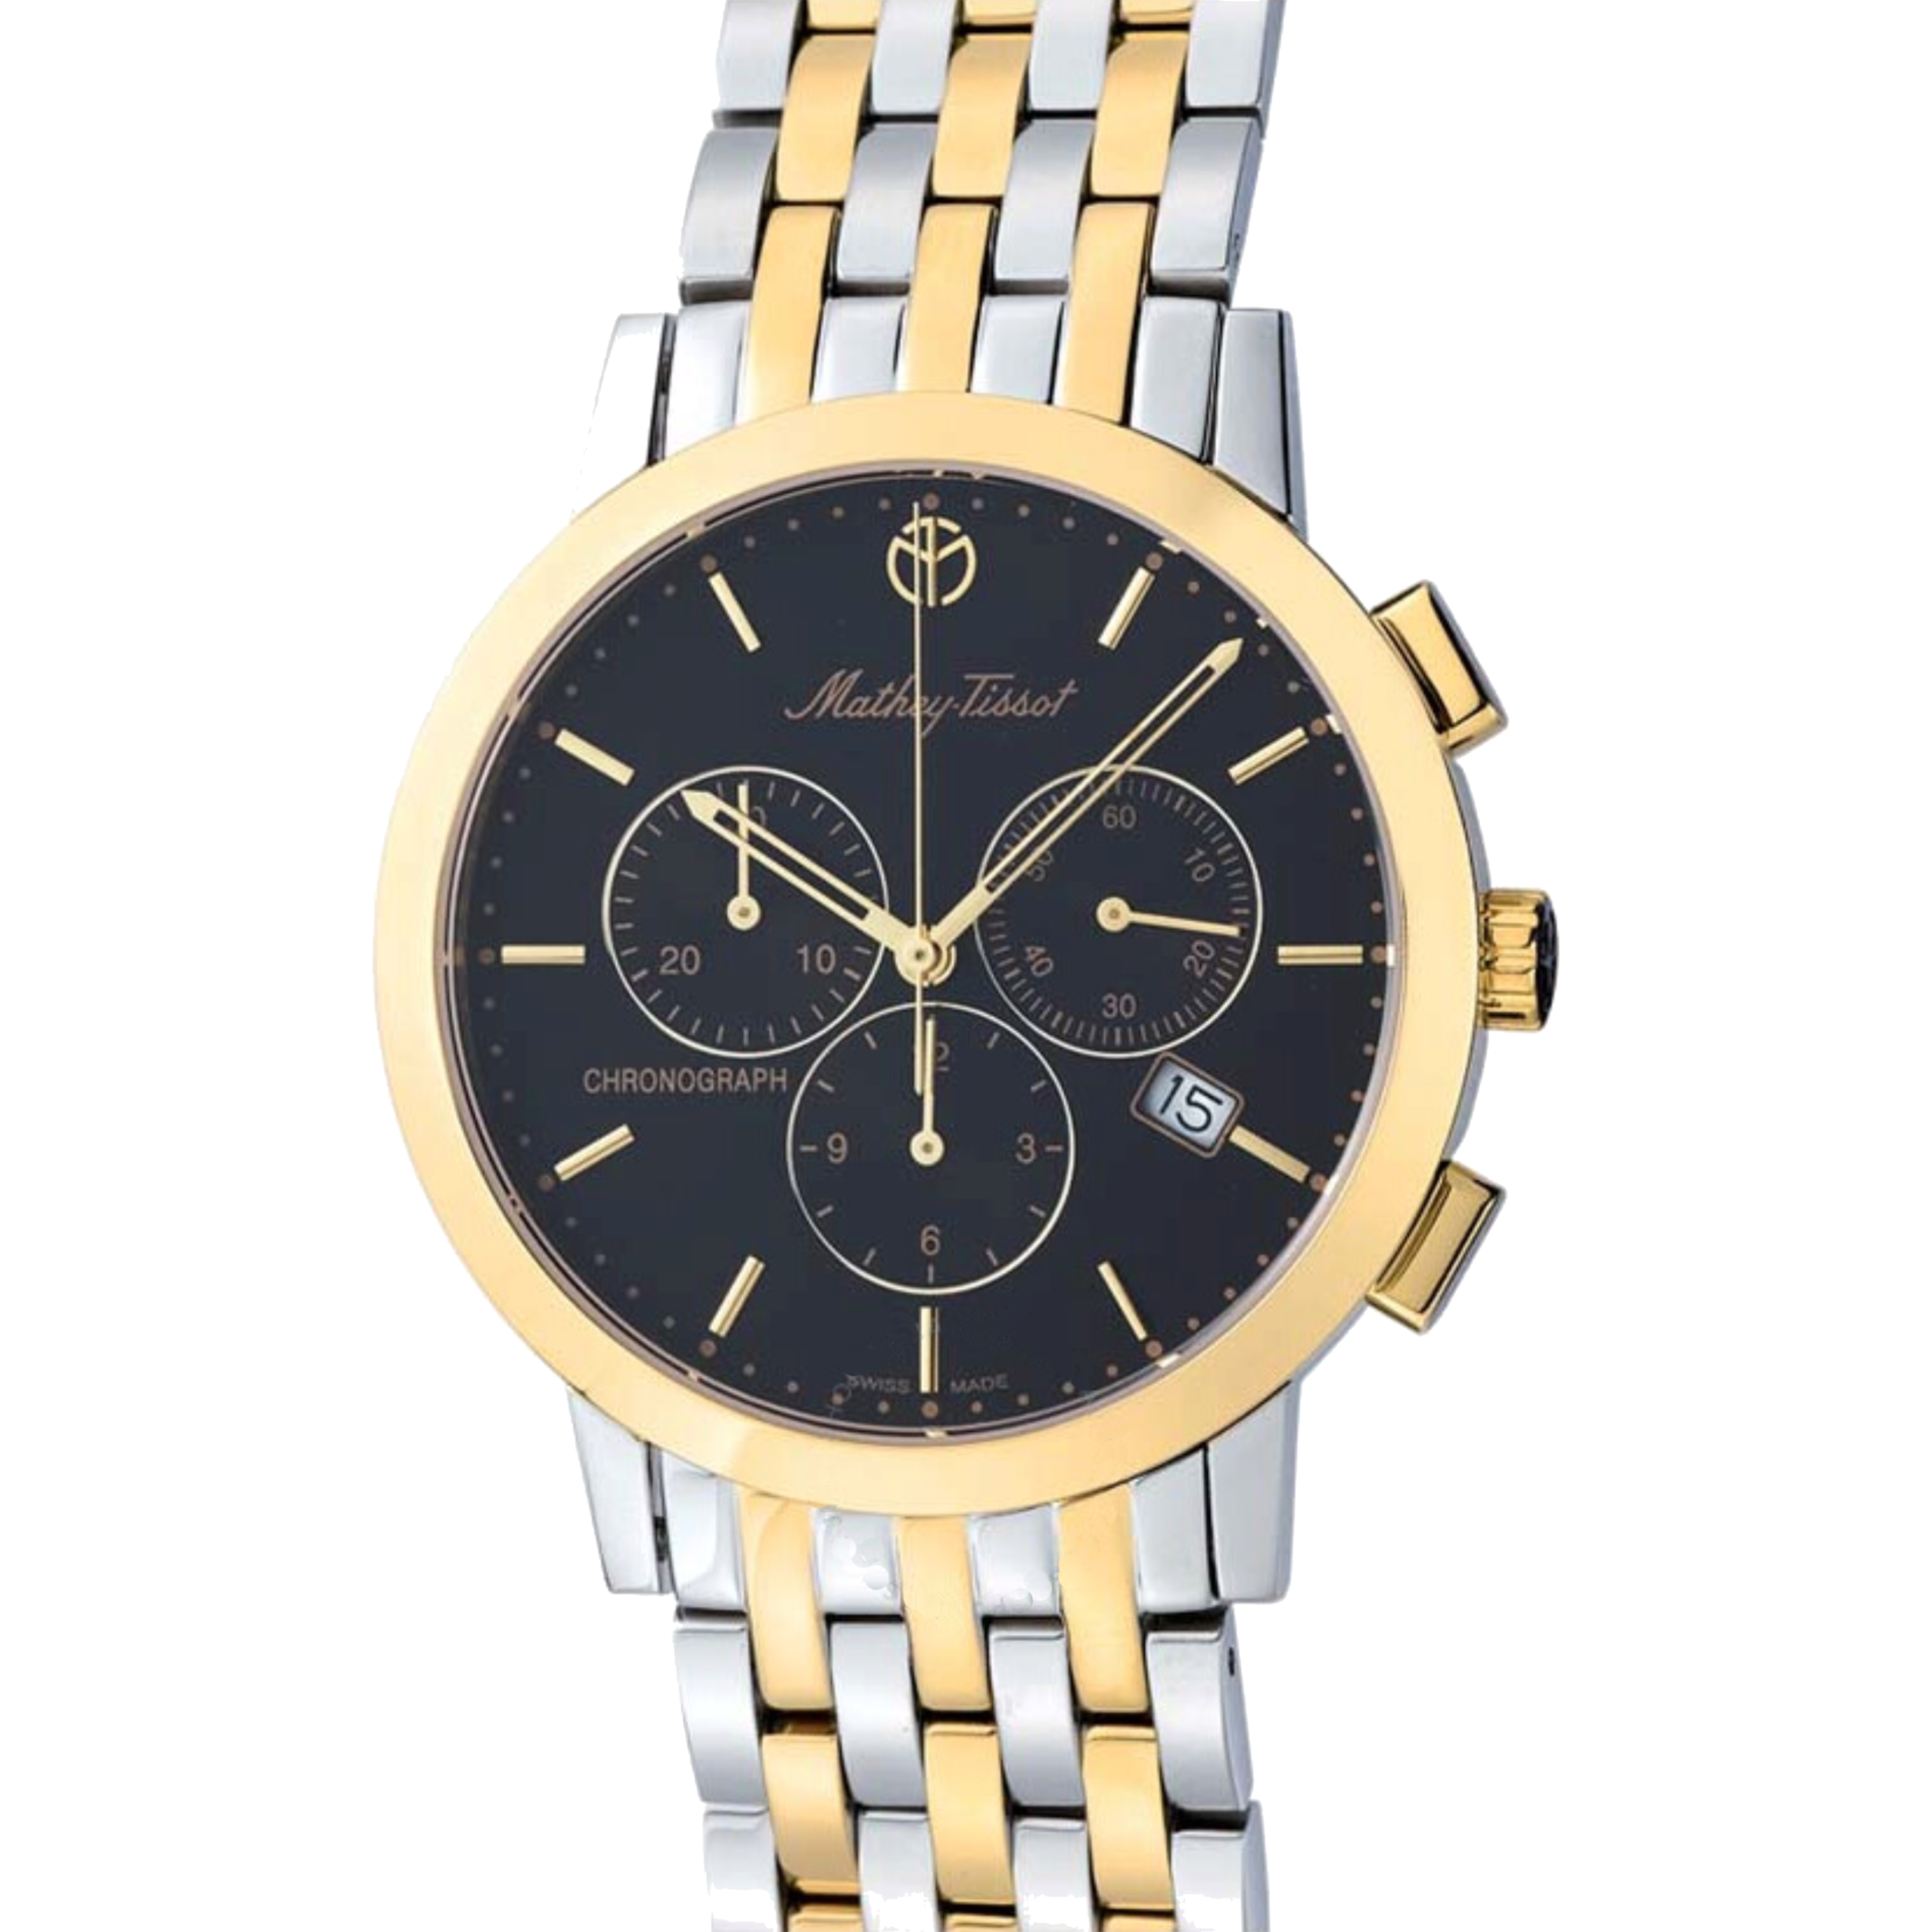 שעון יד לגבר Mathey Tissot H9315CHBN 40mm צבע זהב/כסף/שחור/כרונוגרף - אחריות לשנתיים